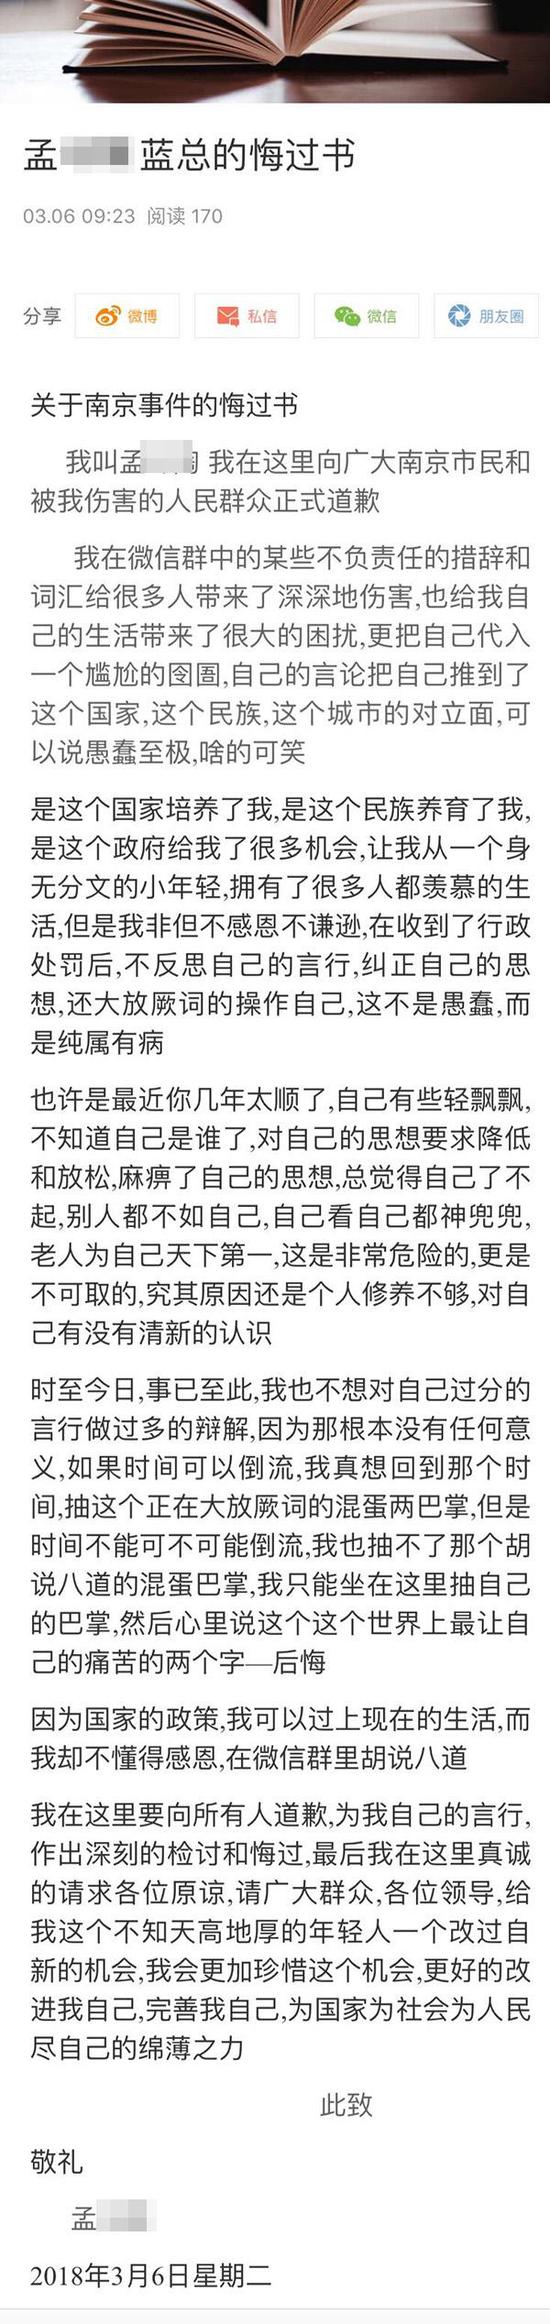 澎湃新闻:男子侮辱南京大屠杀遇难者 发微博悔过：愚蠢至极